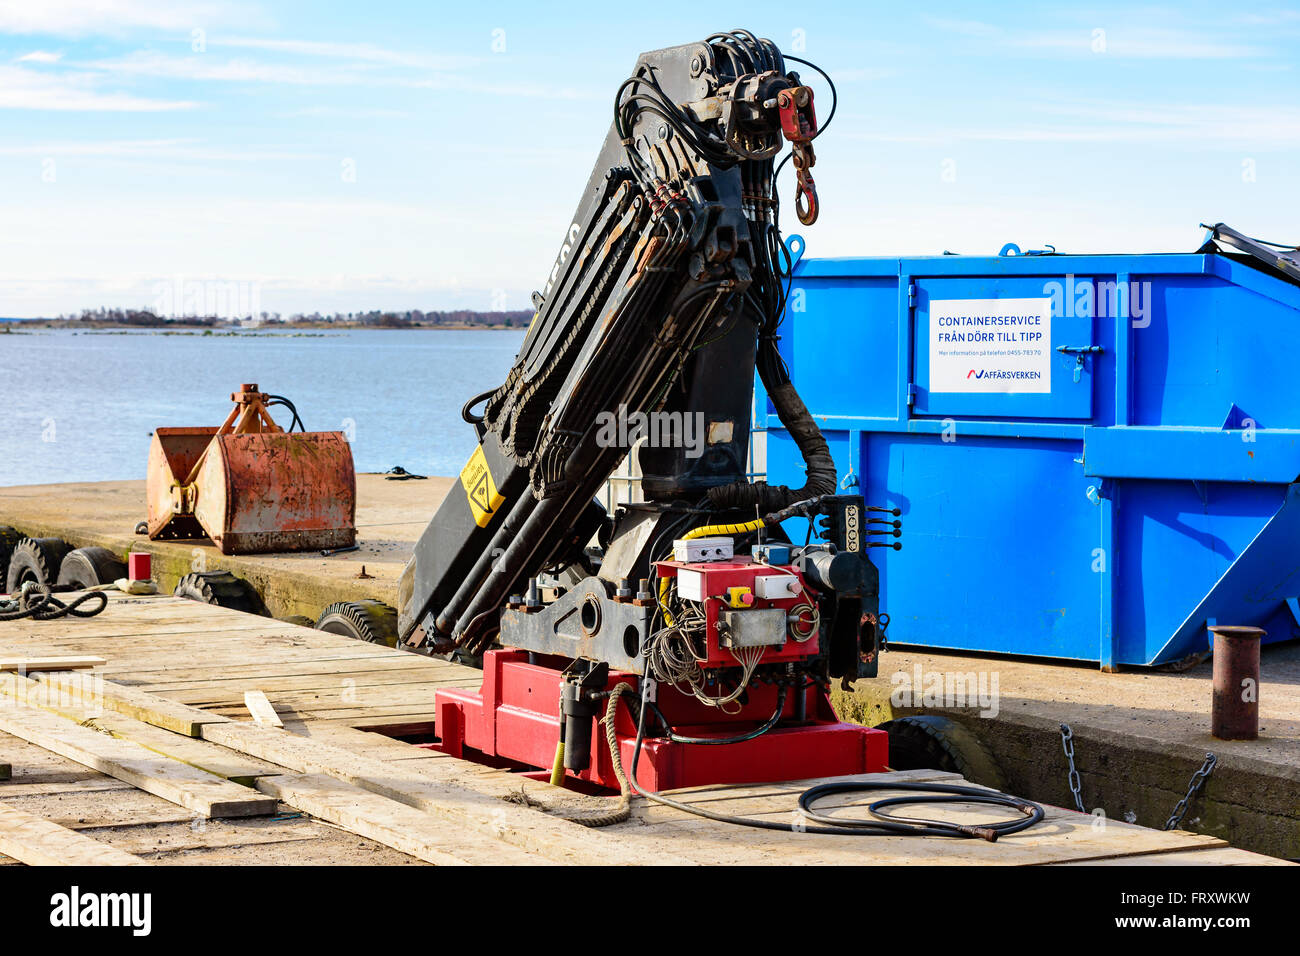 Torhamn, Schweden - 18. März 2016: Ein Baukran ist an einem Schwimmer für den Einsatz bei der Aufhebung der im Meerwasser montiert. Pier mit container Stockfoto